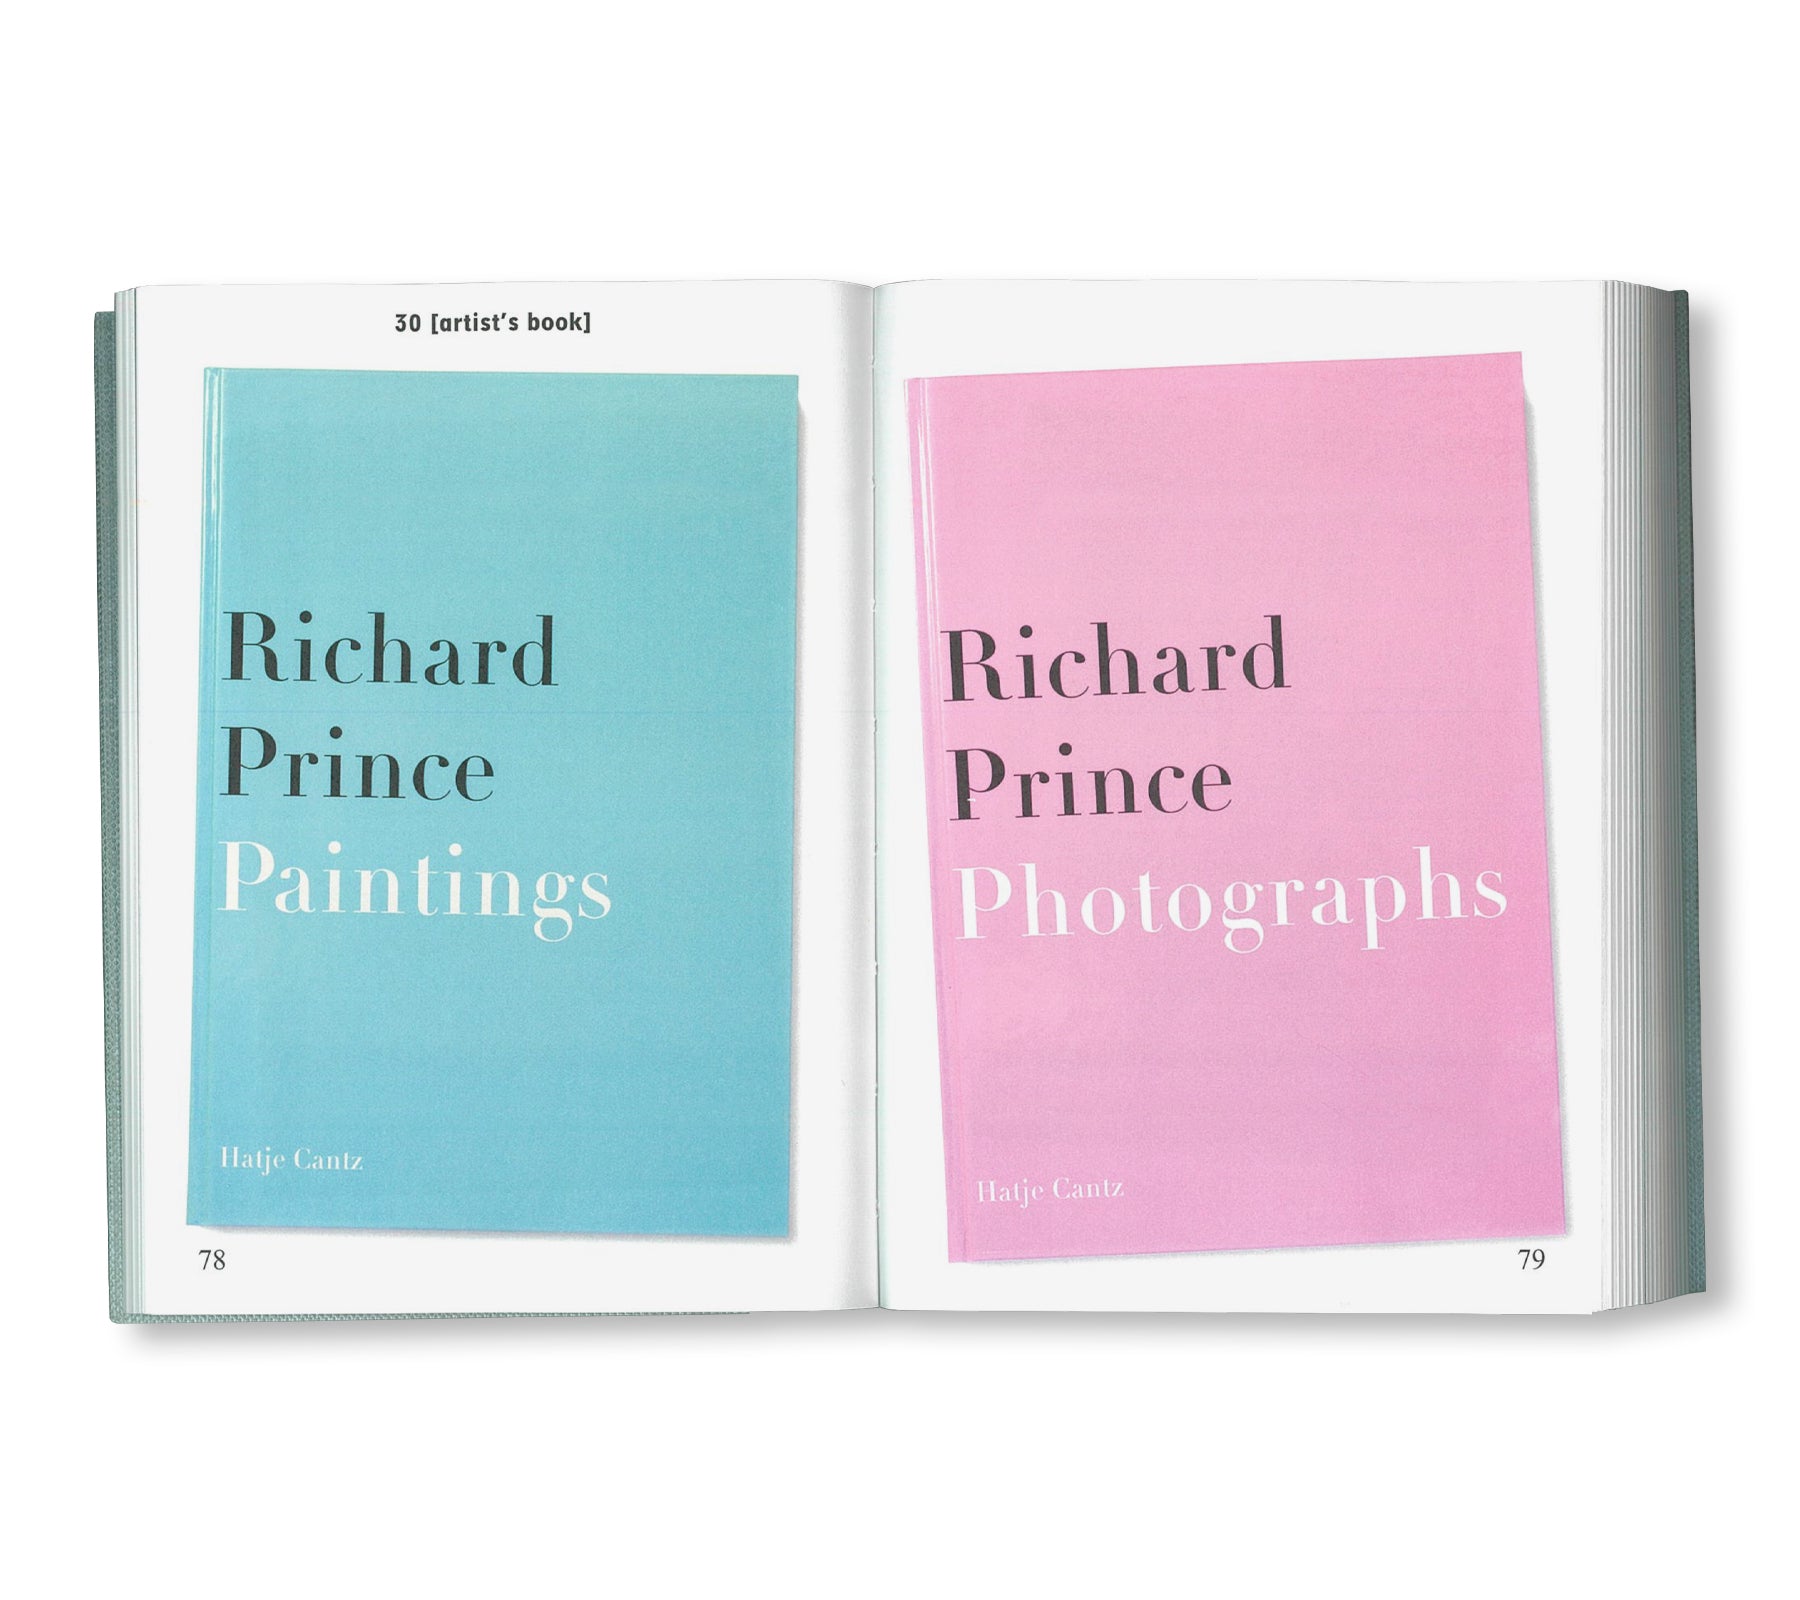 BIBLIOTHÈQUE D’UN AMATEUR. RICHARD PRINCE’S PUBLICATIONS 1980–2020 by Richard Prince